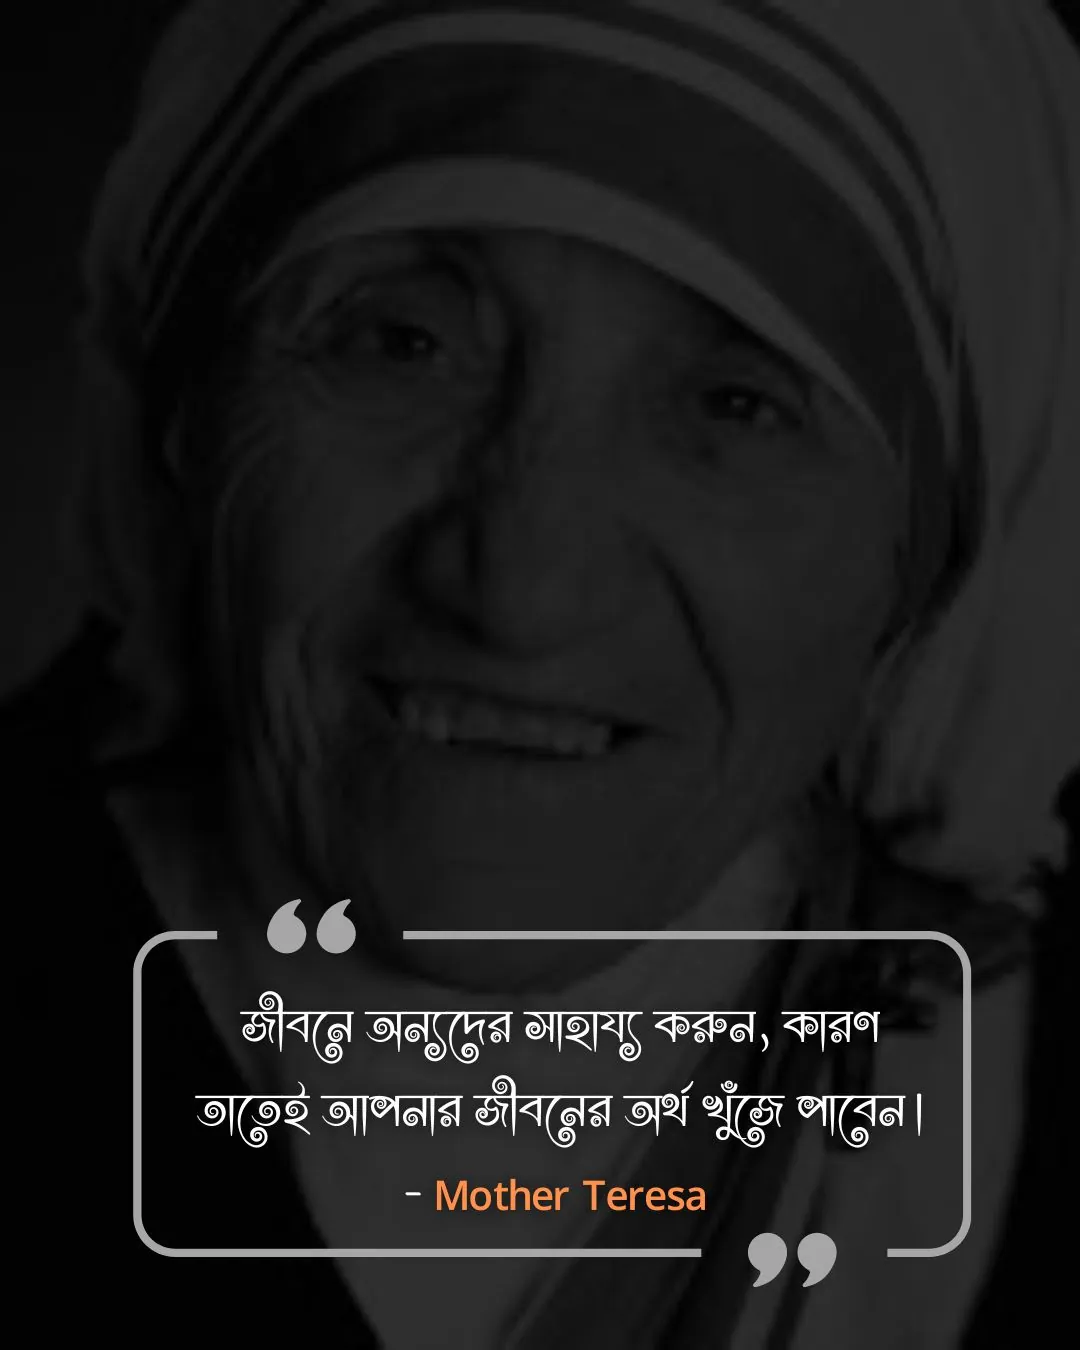 জীবন উপভোগ নিয়ে উক্তি- - Mother Teresa